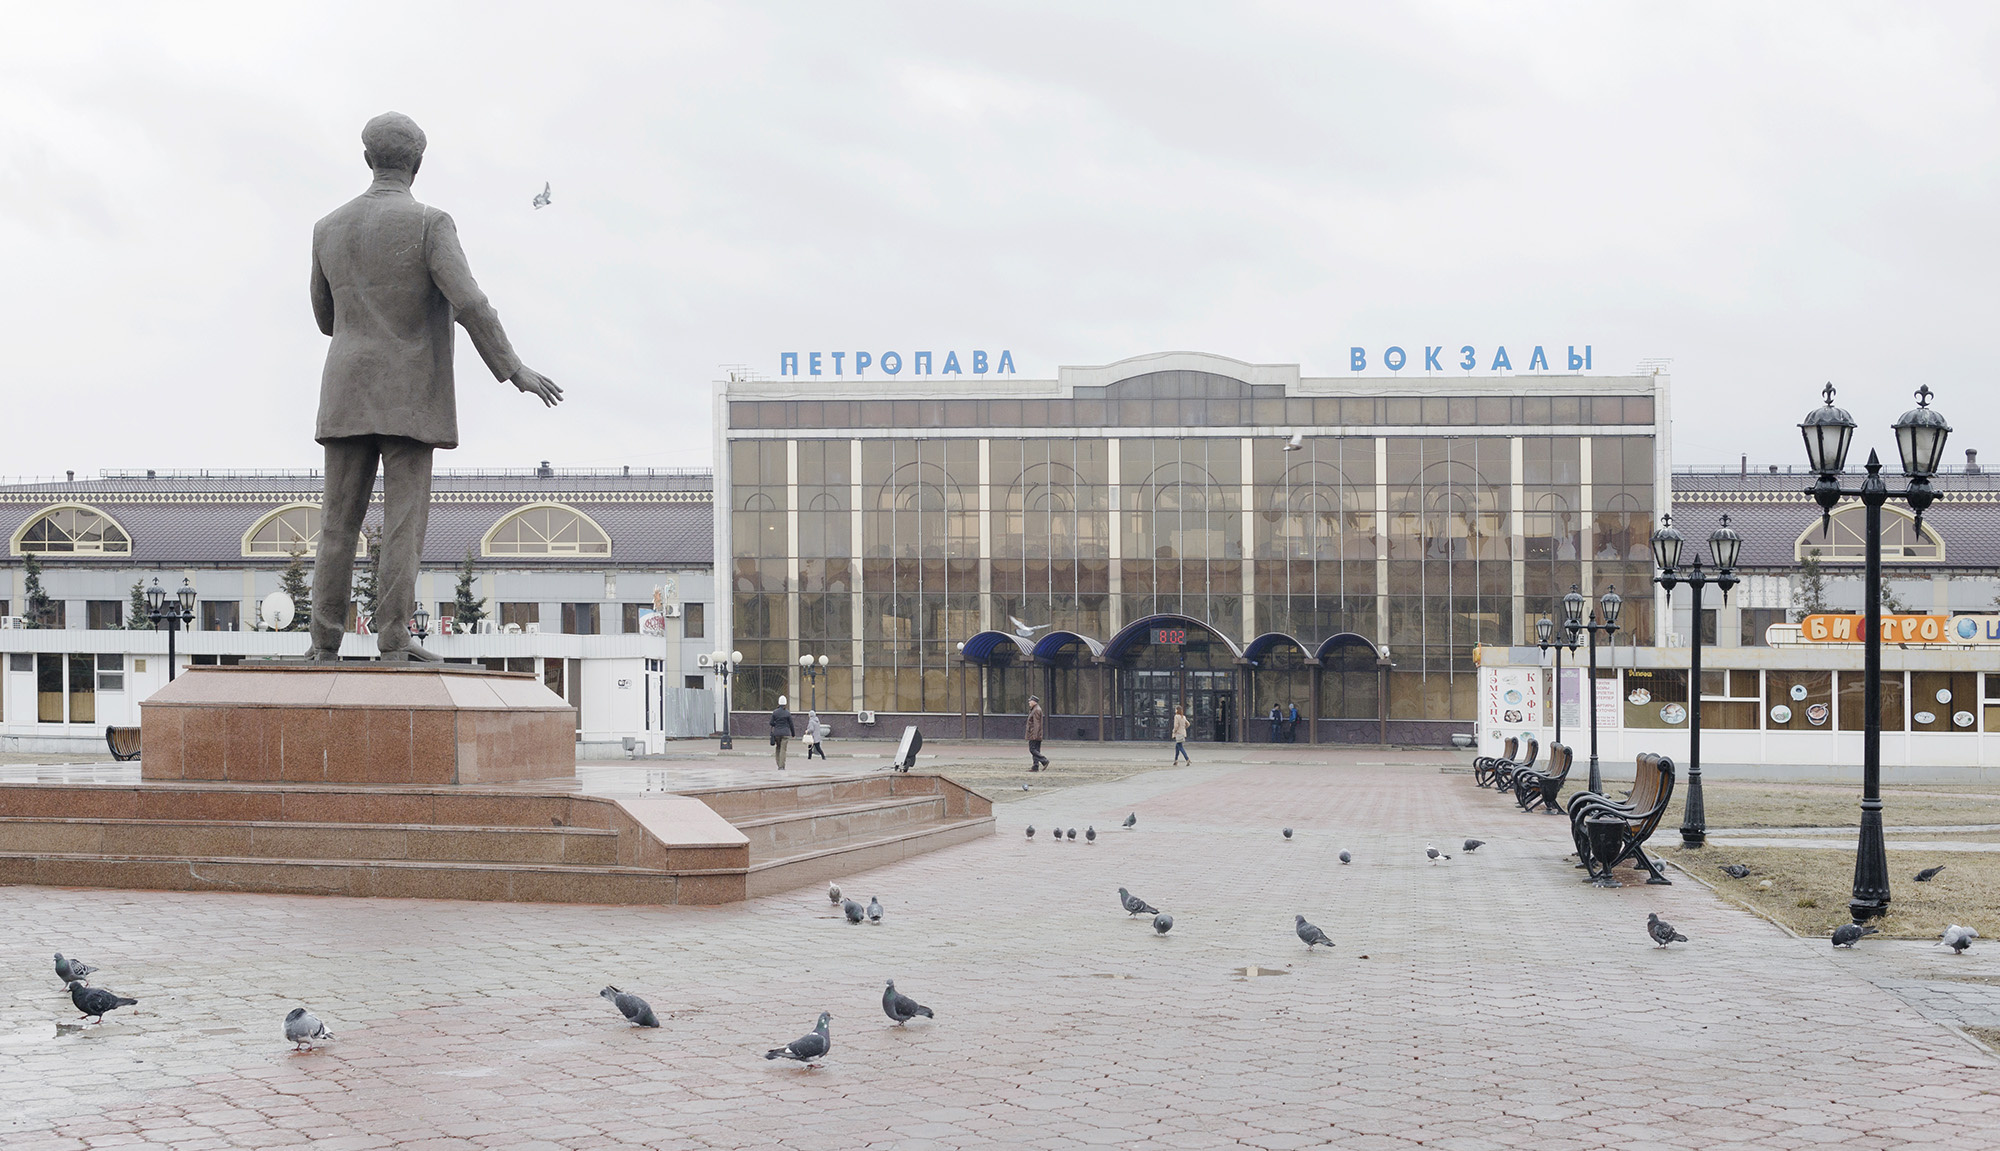 петропавловск казахстан жд вокзал